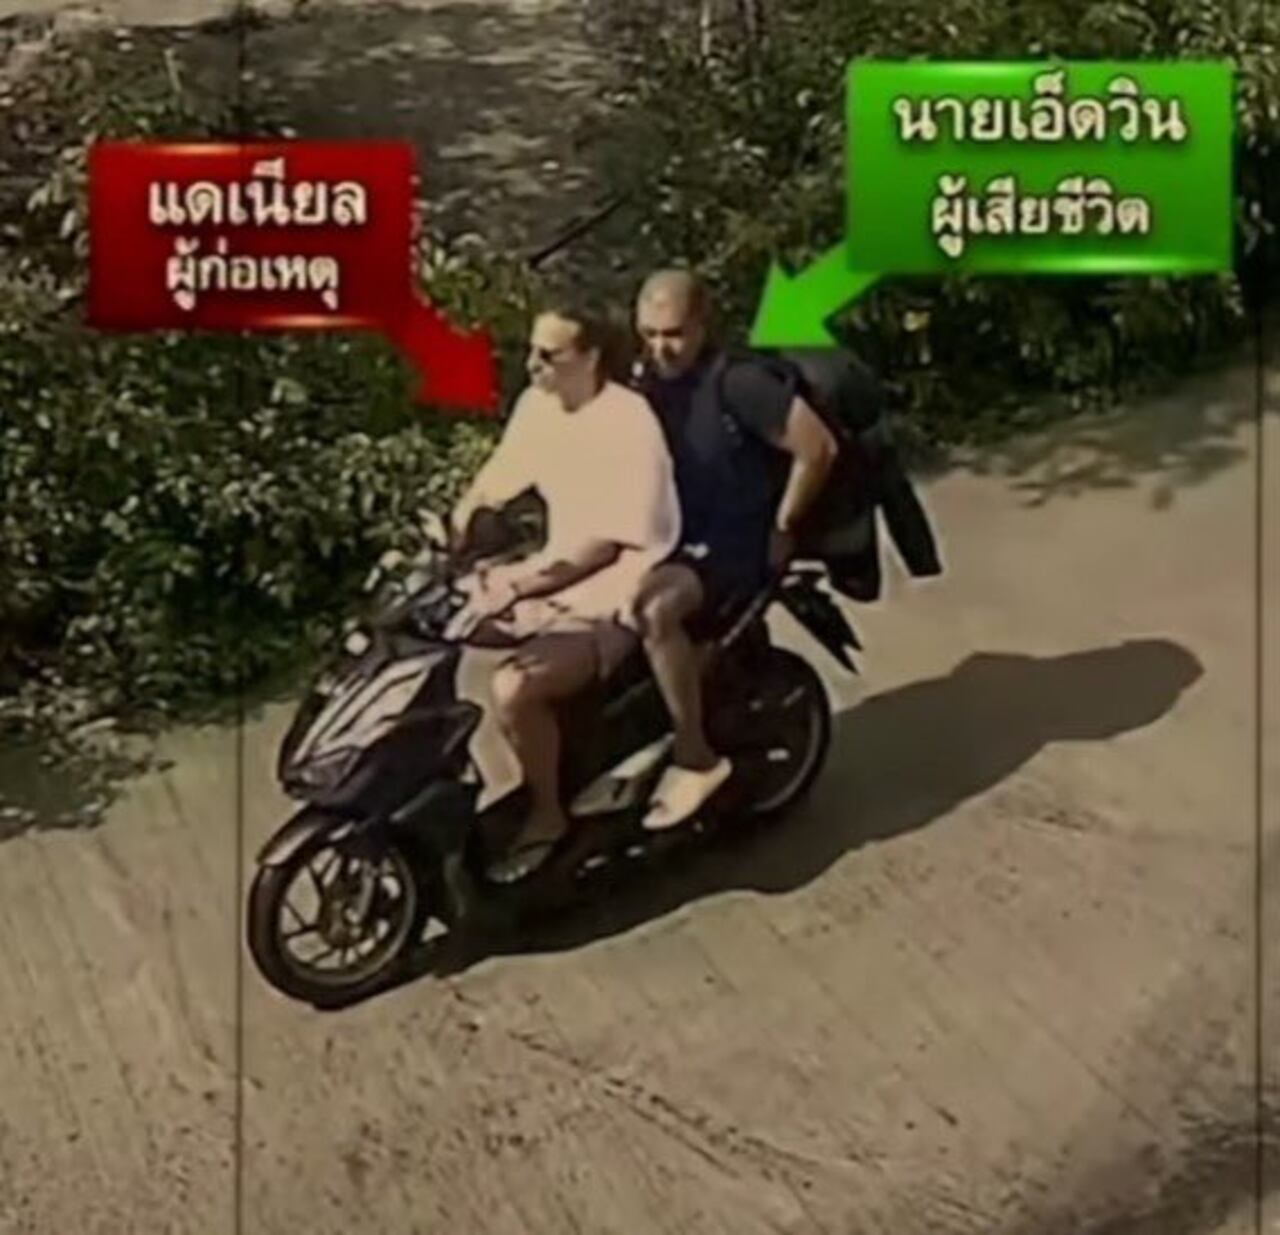 La policía tailandesa reveló imágenes de ambos hombres compartiendo antes del macabro crimen.